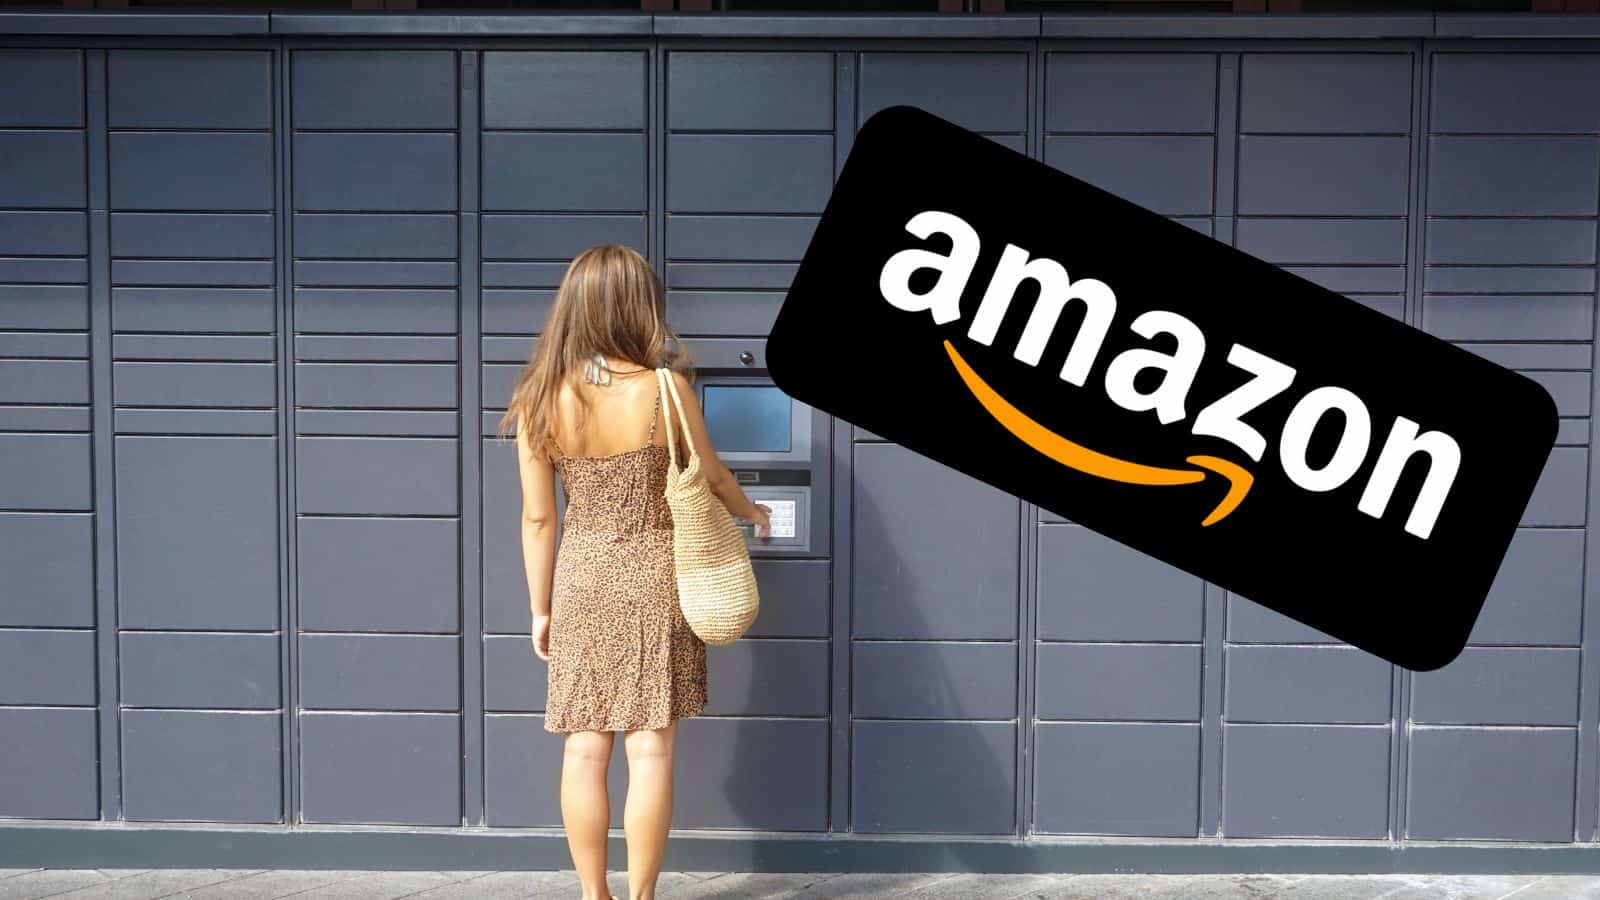 Amazon IMPAZZISCE con offerte al 90% e smartphone in regalo GRATIS